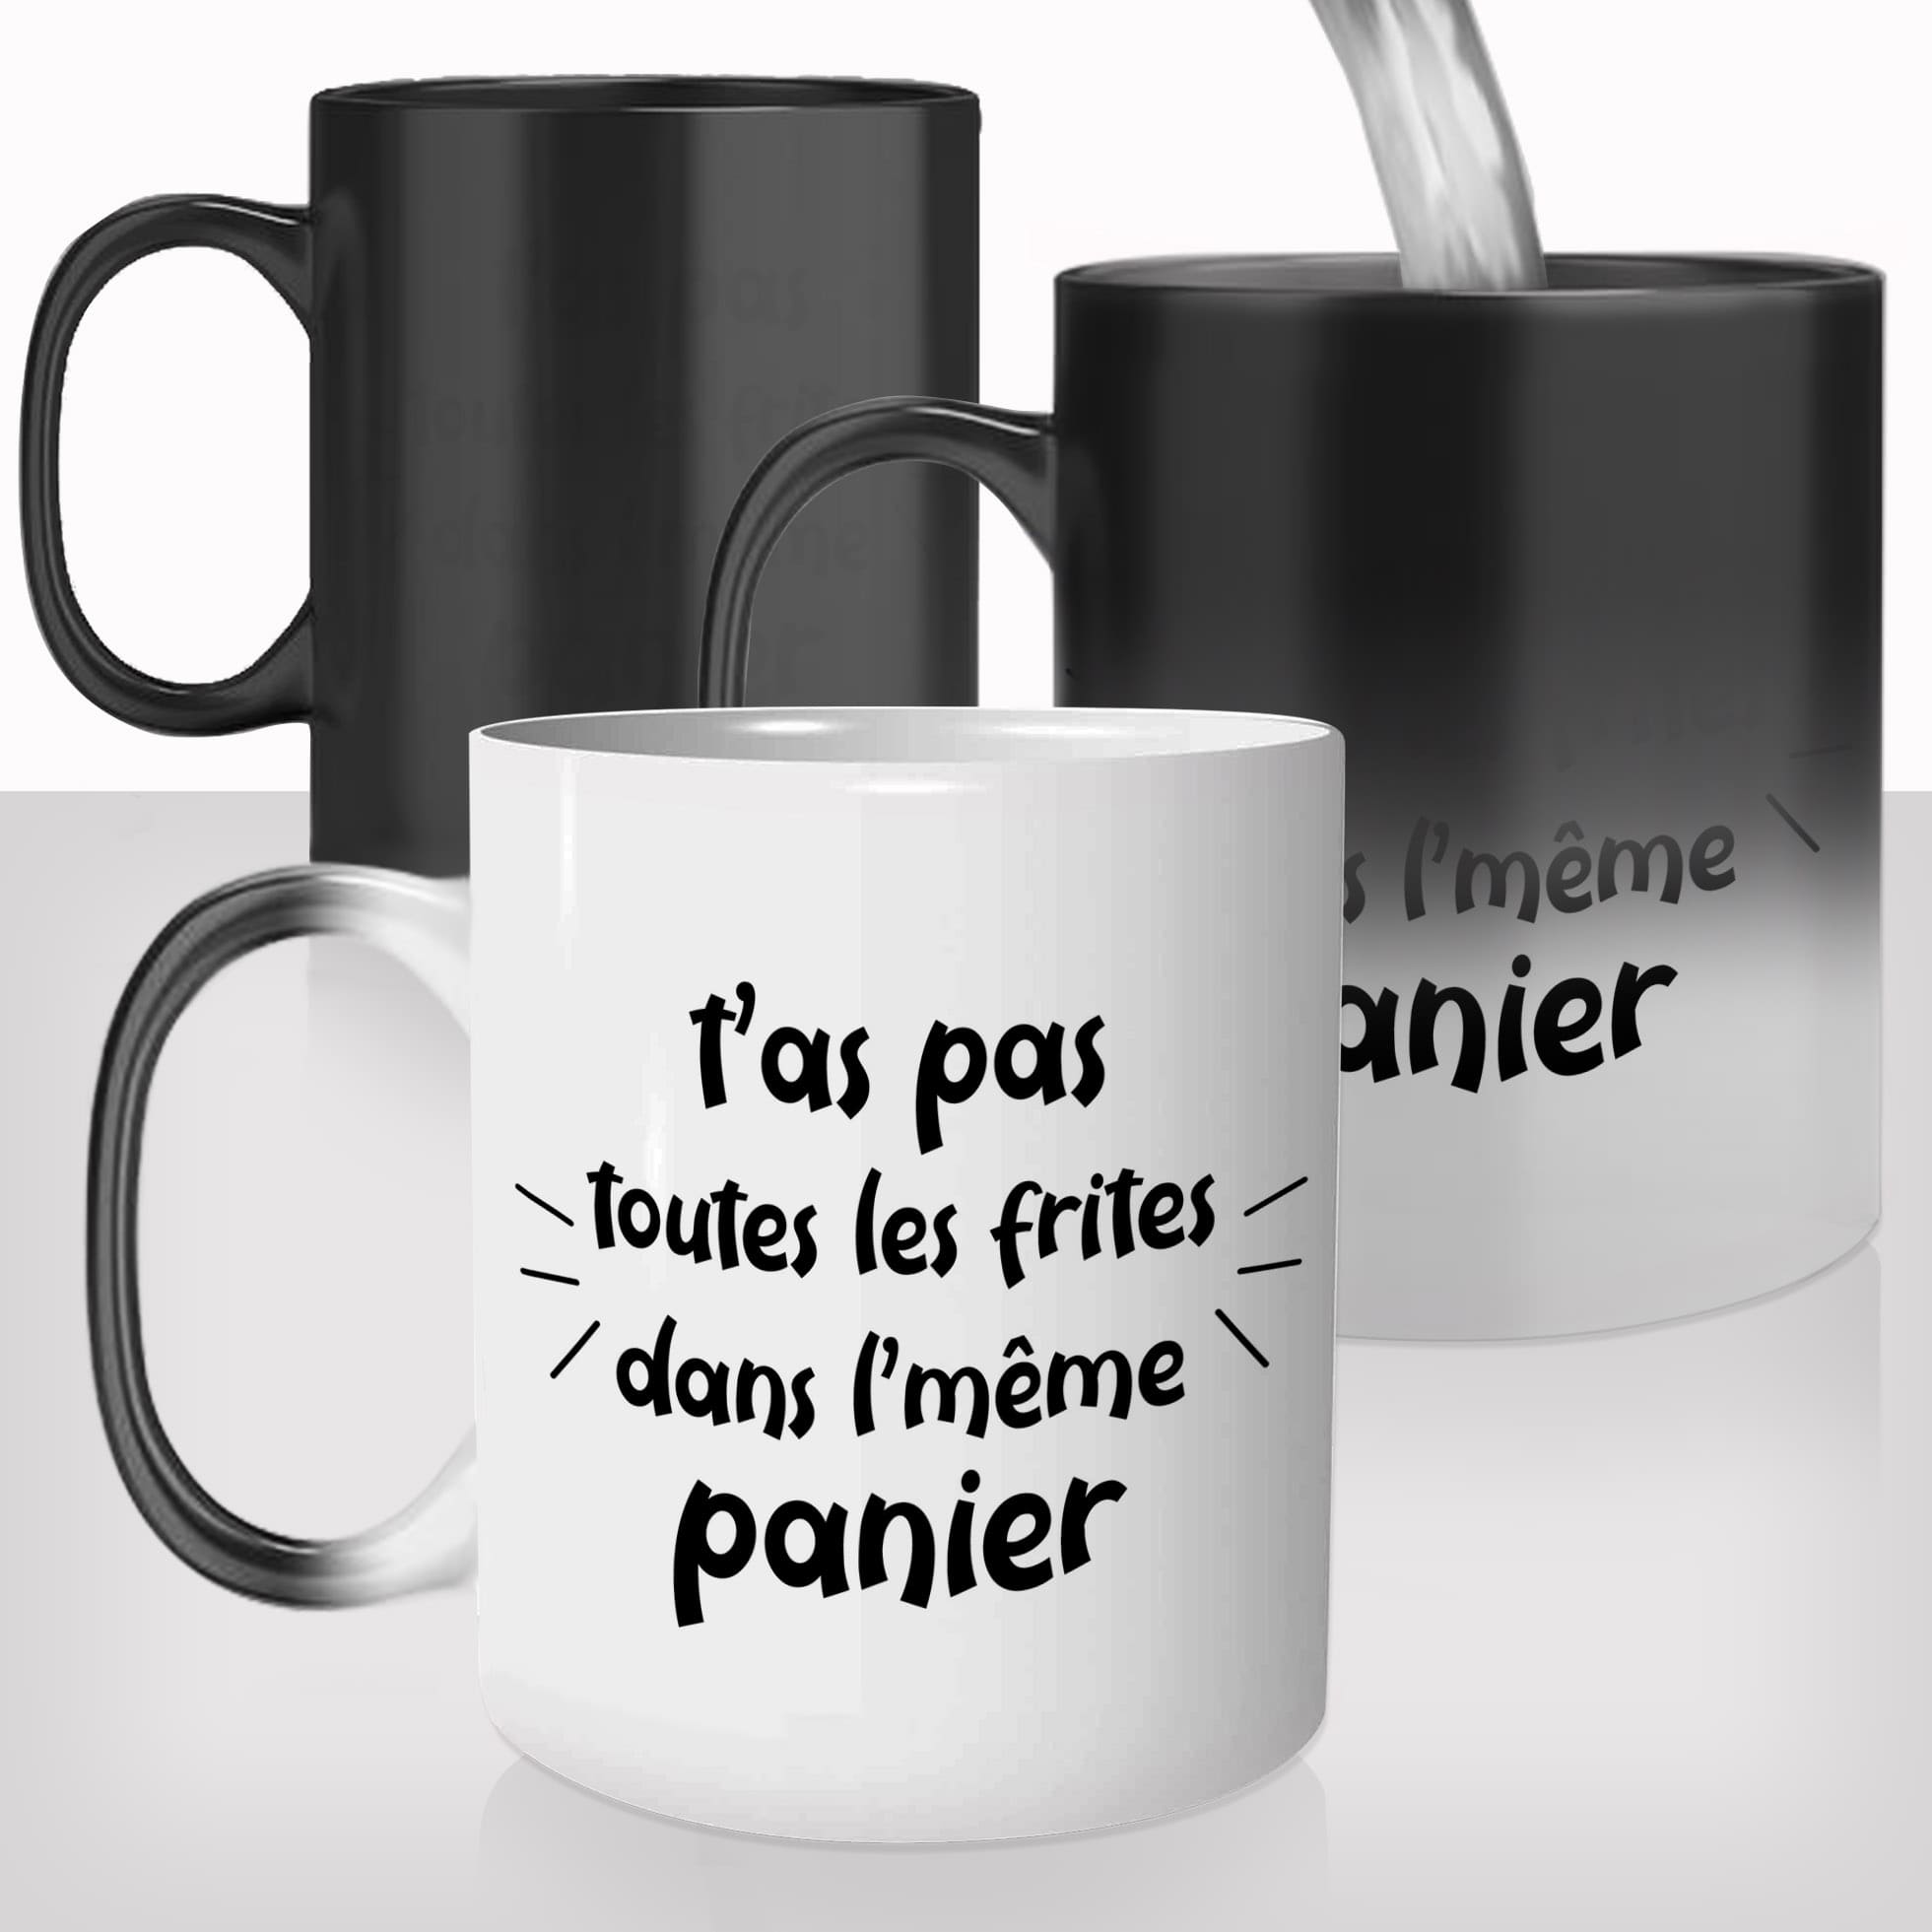 mug-magique-thasse-thermoréactive-thermoréactif-mugs-cadeau-surprise-pas-cher-tas-pas-toutes-les-frites-dans-le-meme-panier-belge-belgique